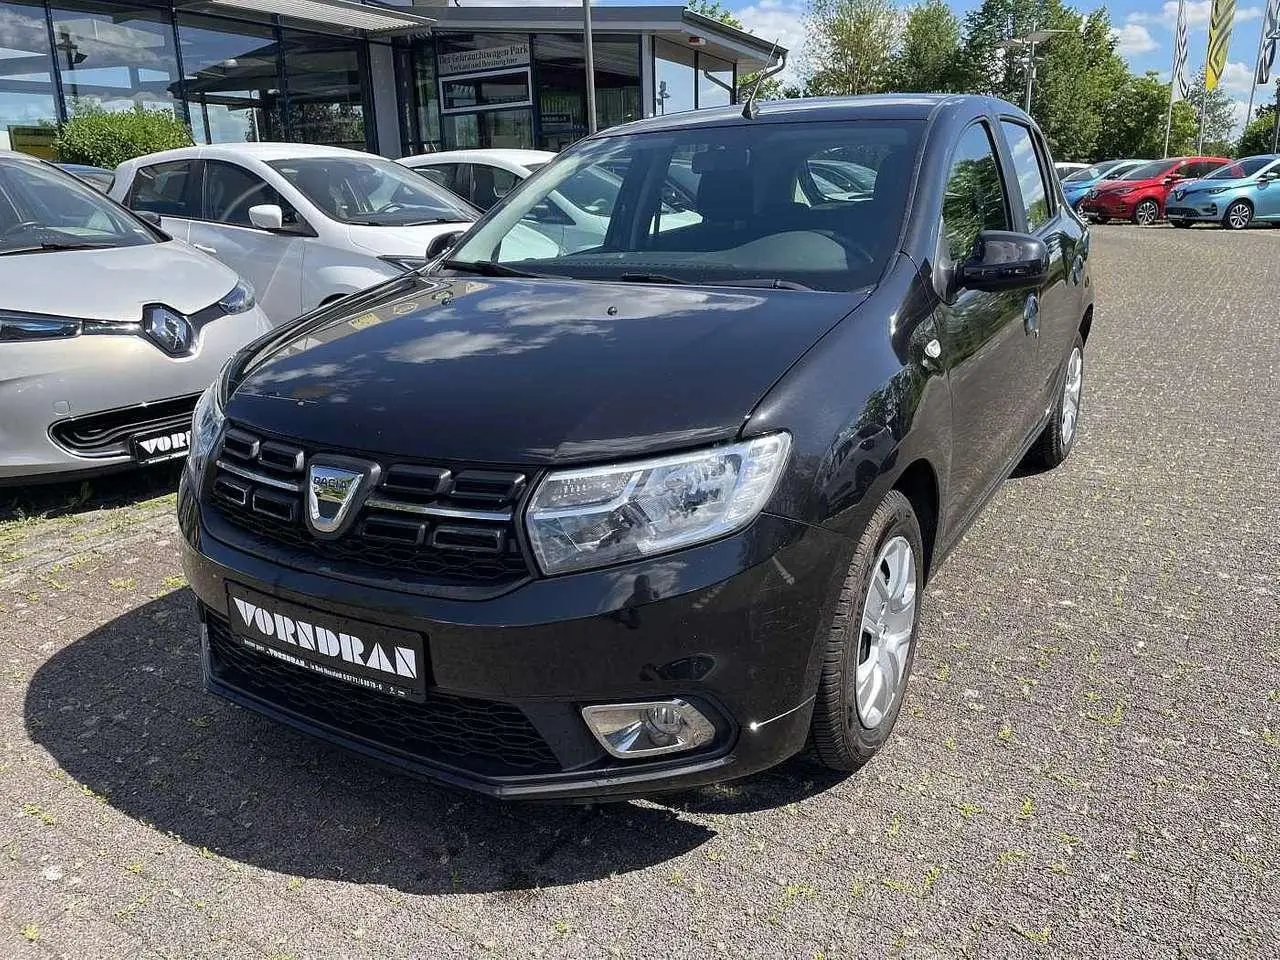 Photo 1 : Dacia Sandero 2019 GPL